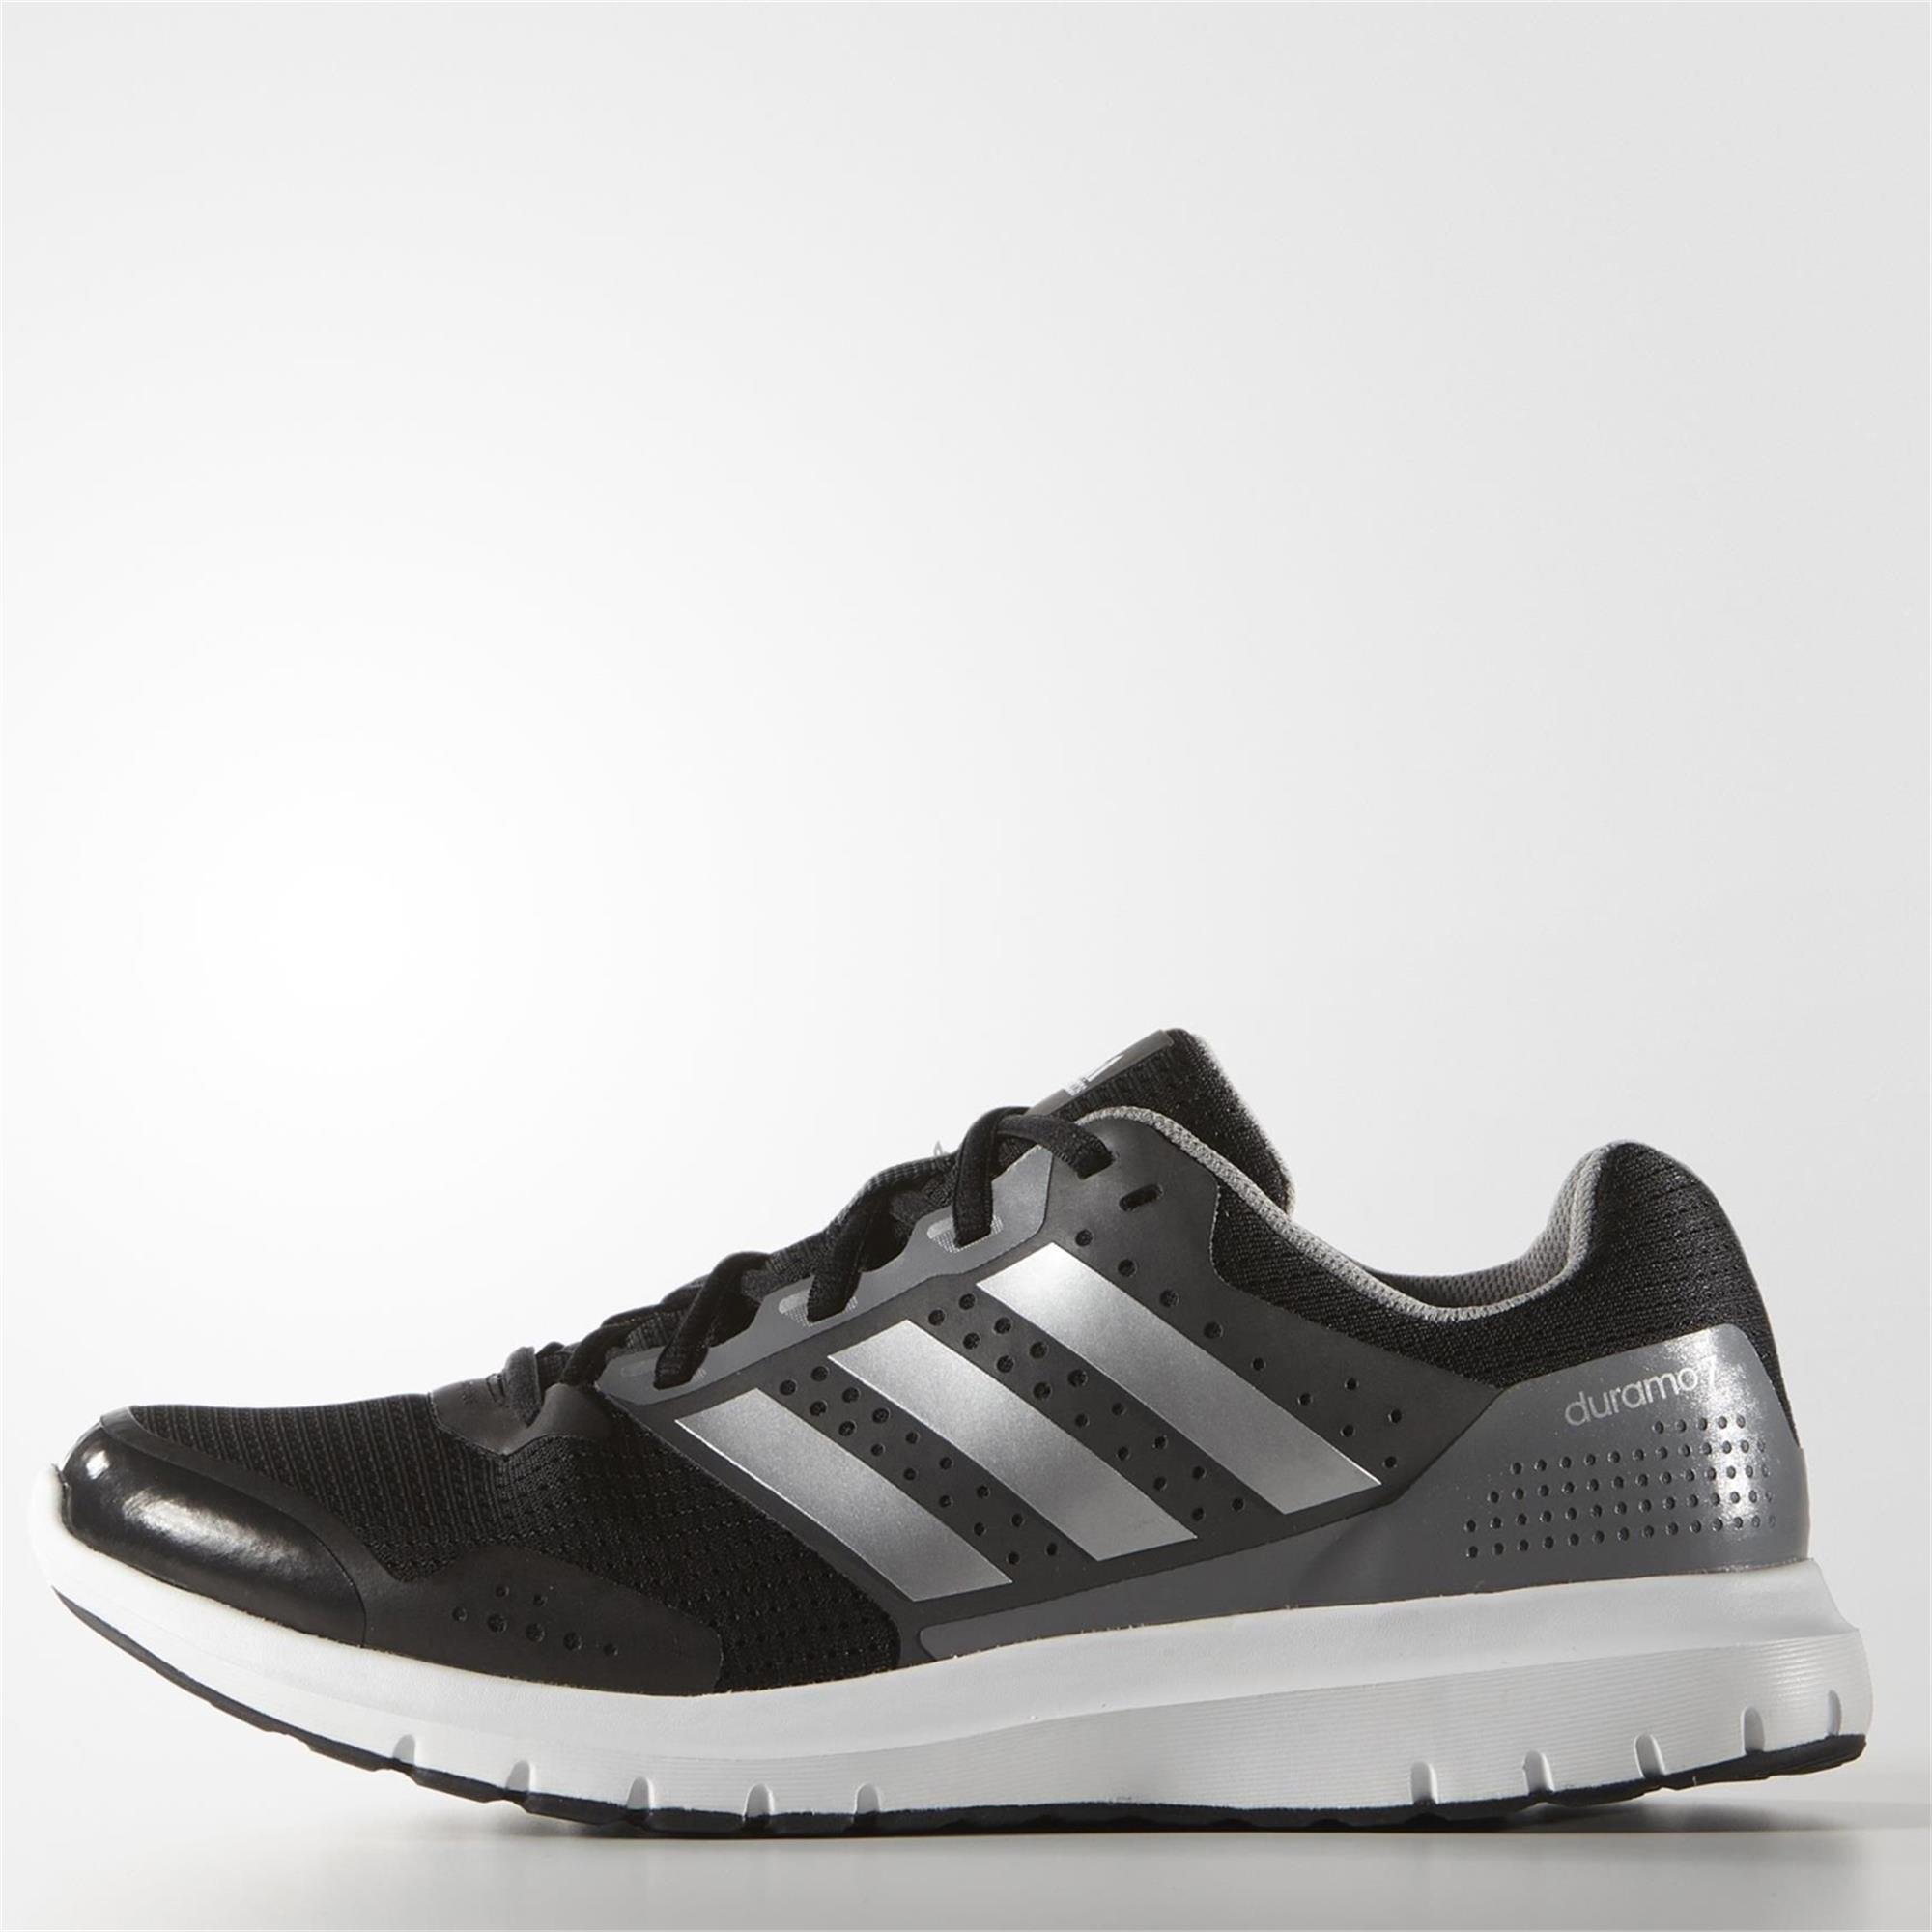 adidas Duramo 7 M Erkek Koşu Ayakkabısı Ürün kodu: B33550 | Etichet Sport